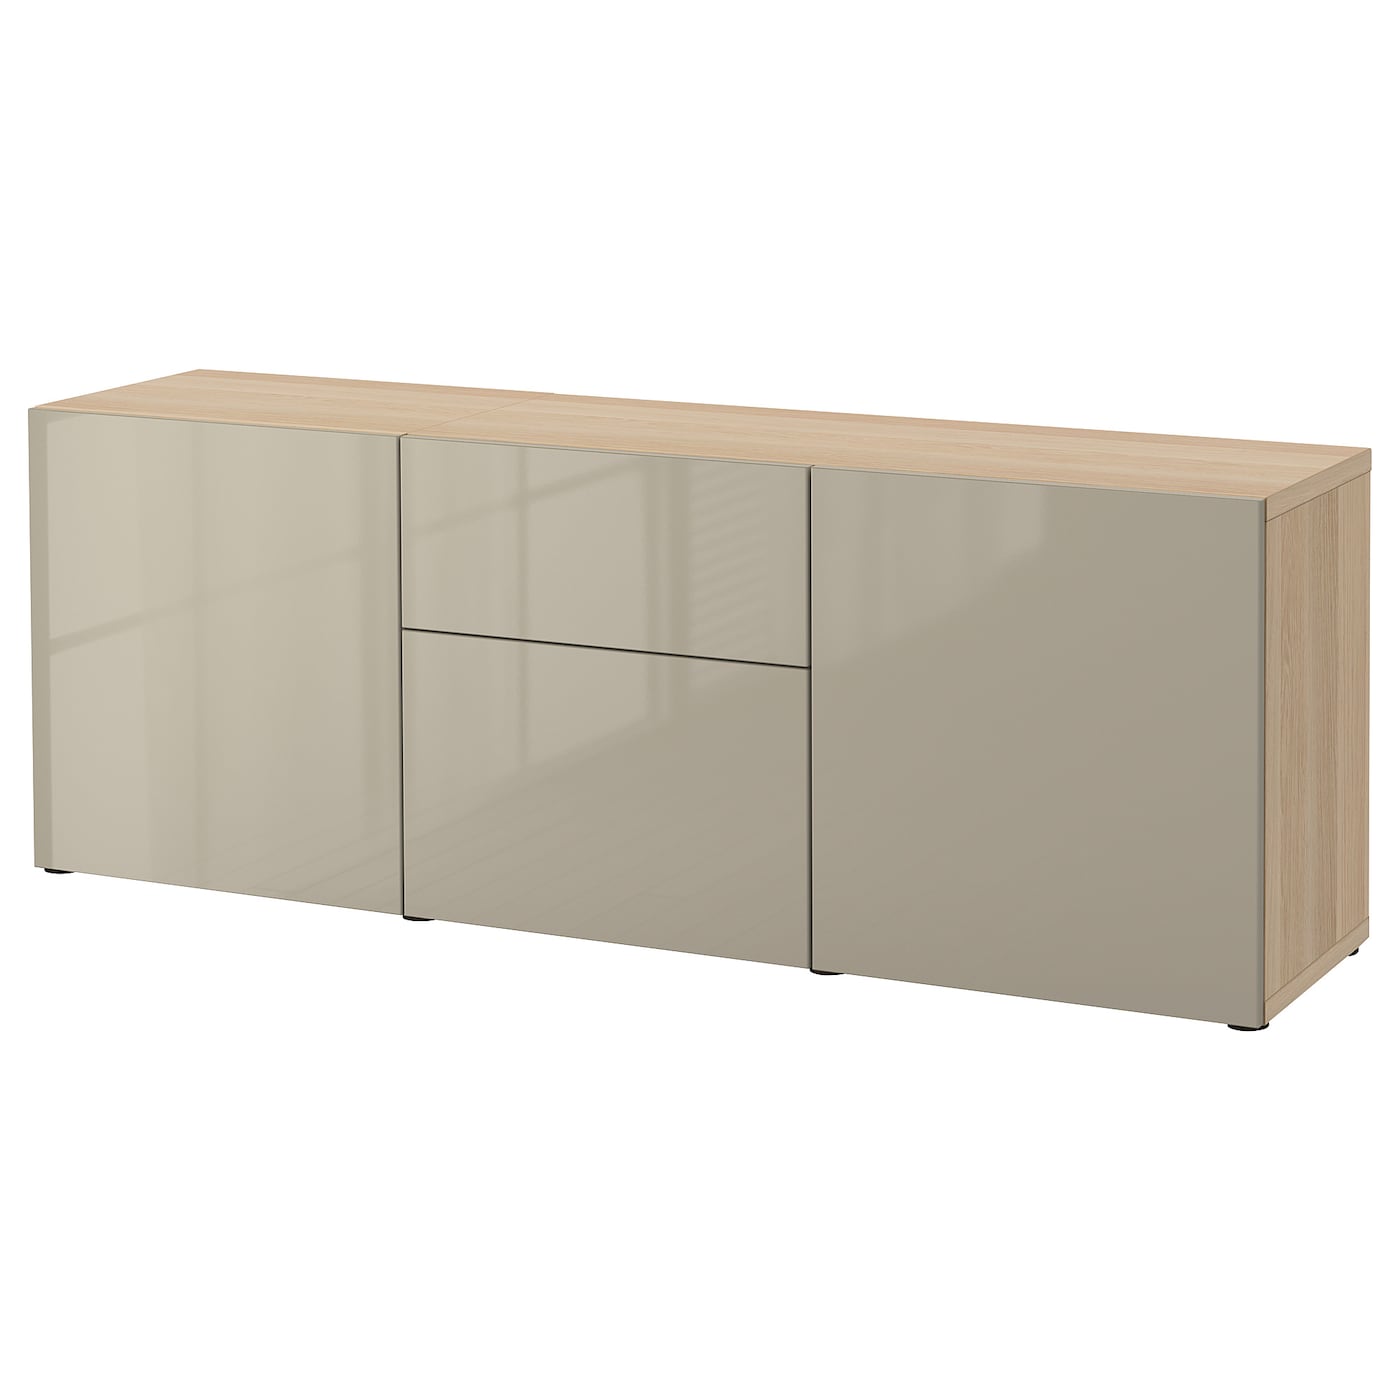 IKEA BESTÅ Kombinacja z szufladami, Dąb bejcowany na biało/Selsviken wysoki połysk beż, 180x42x65 cm